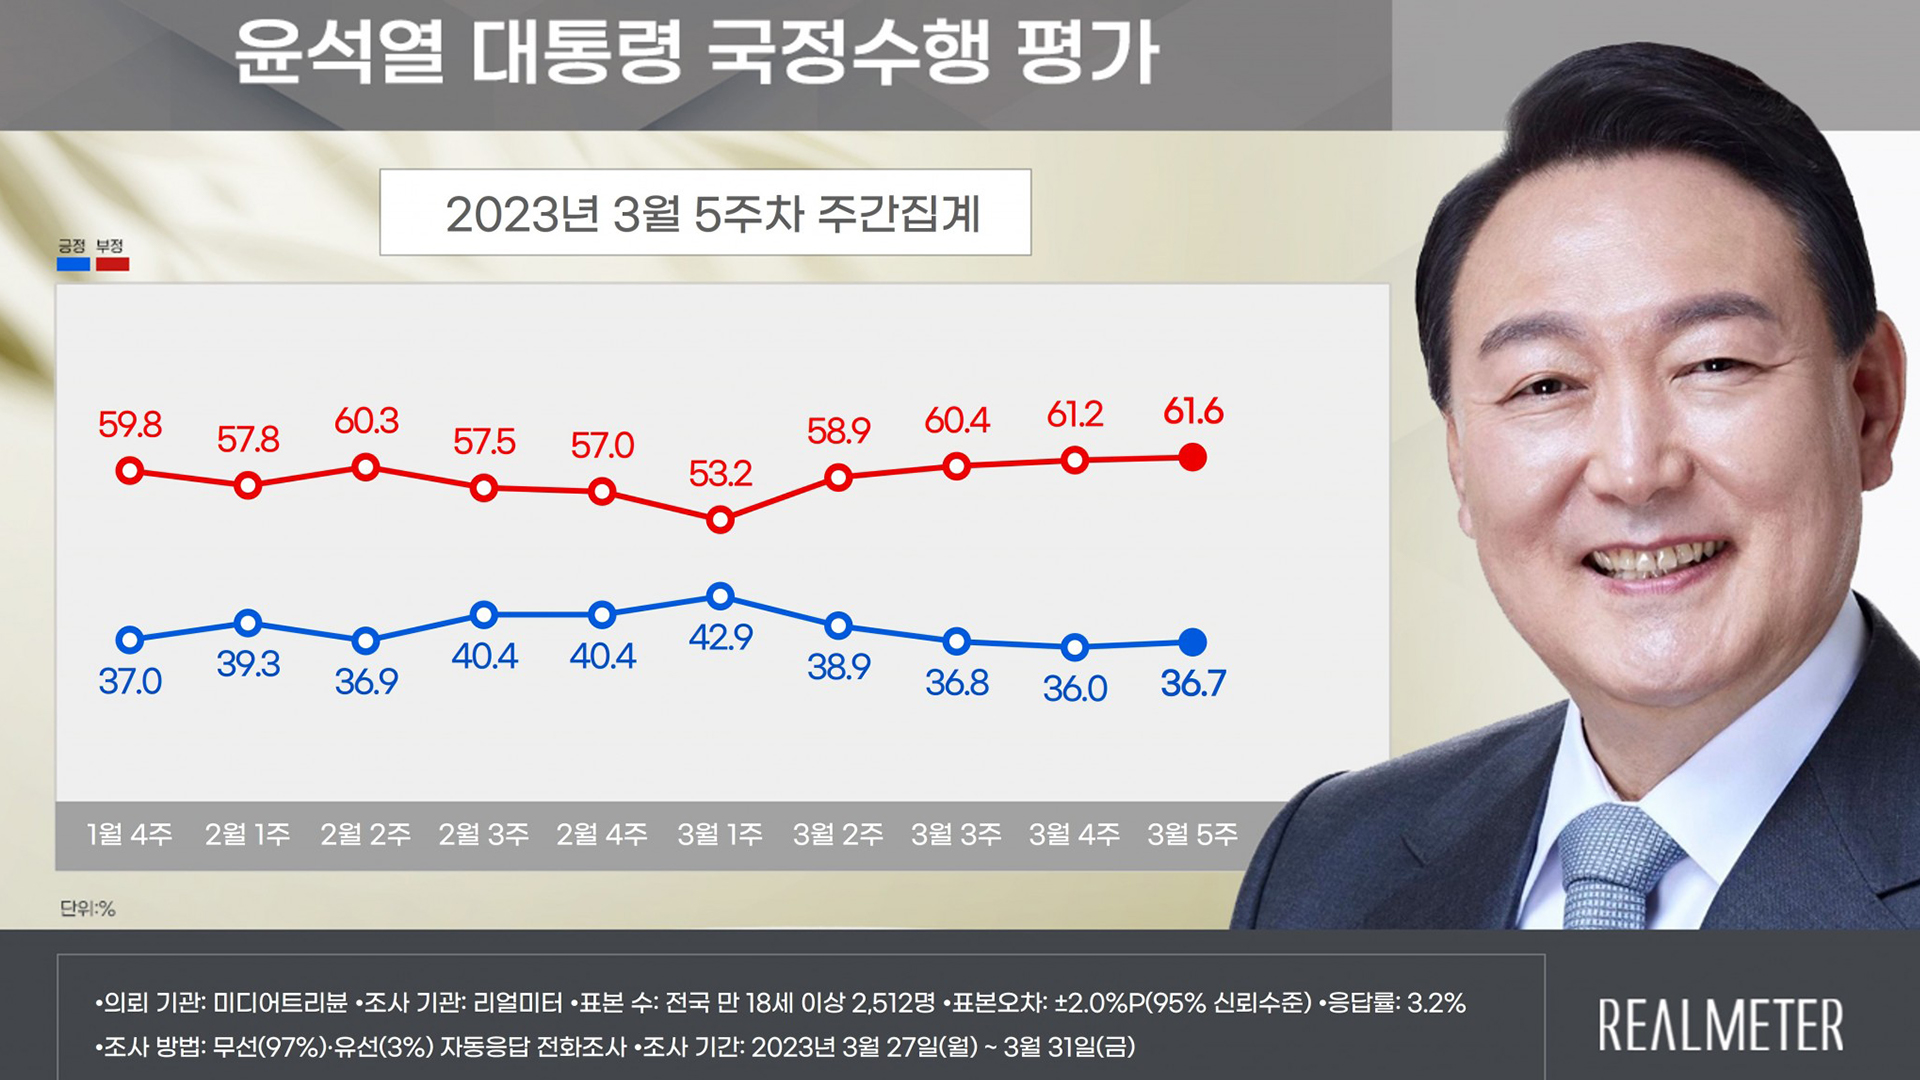 윤석열 지지율 36.7%.. 